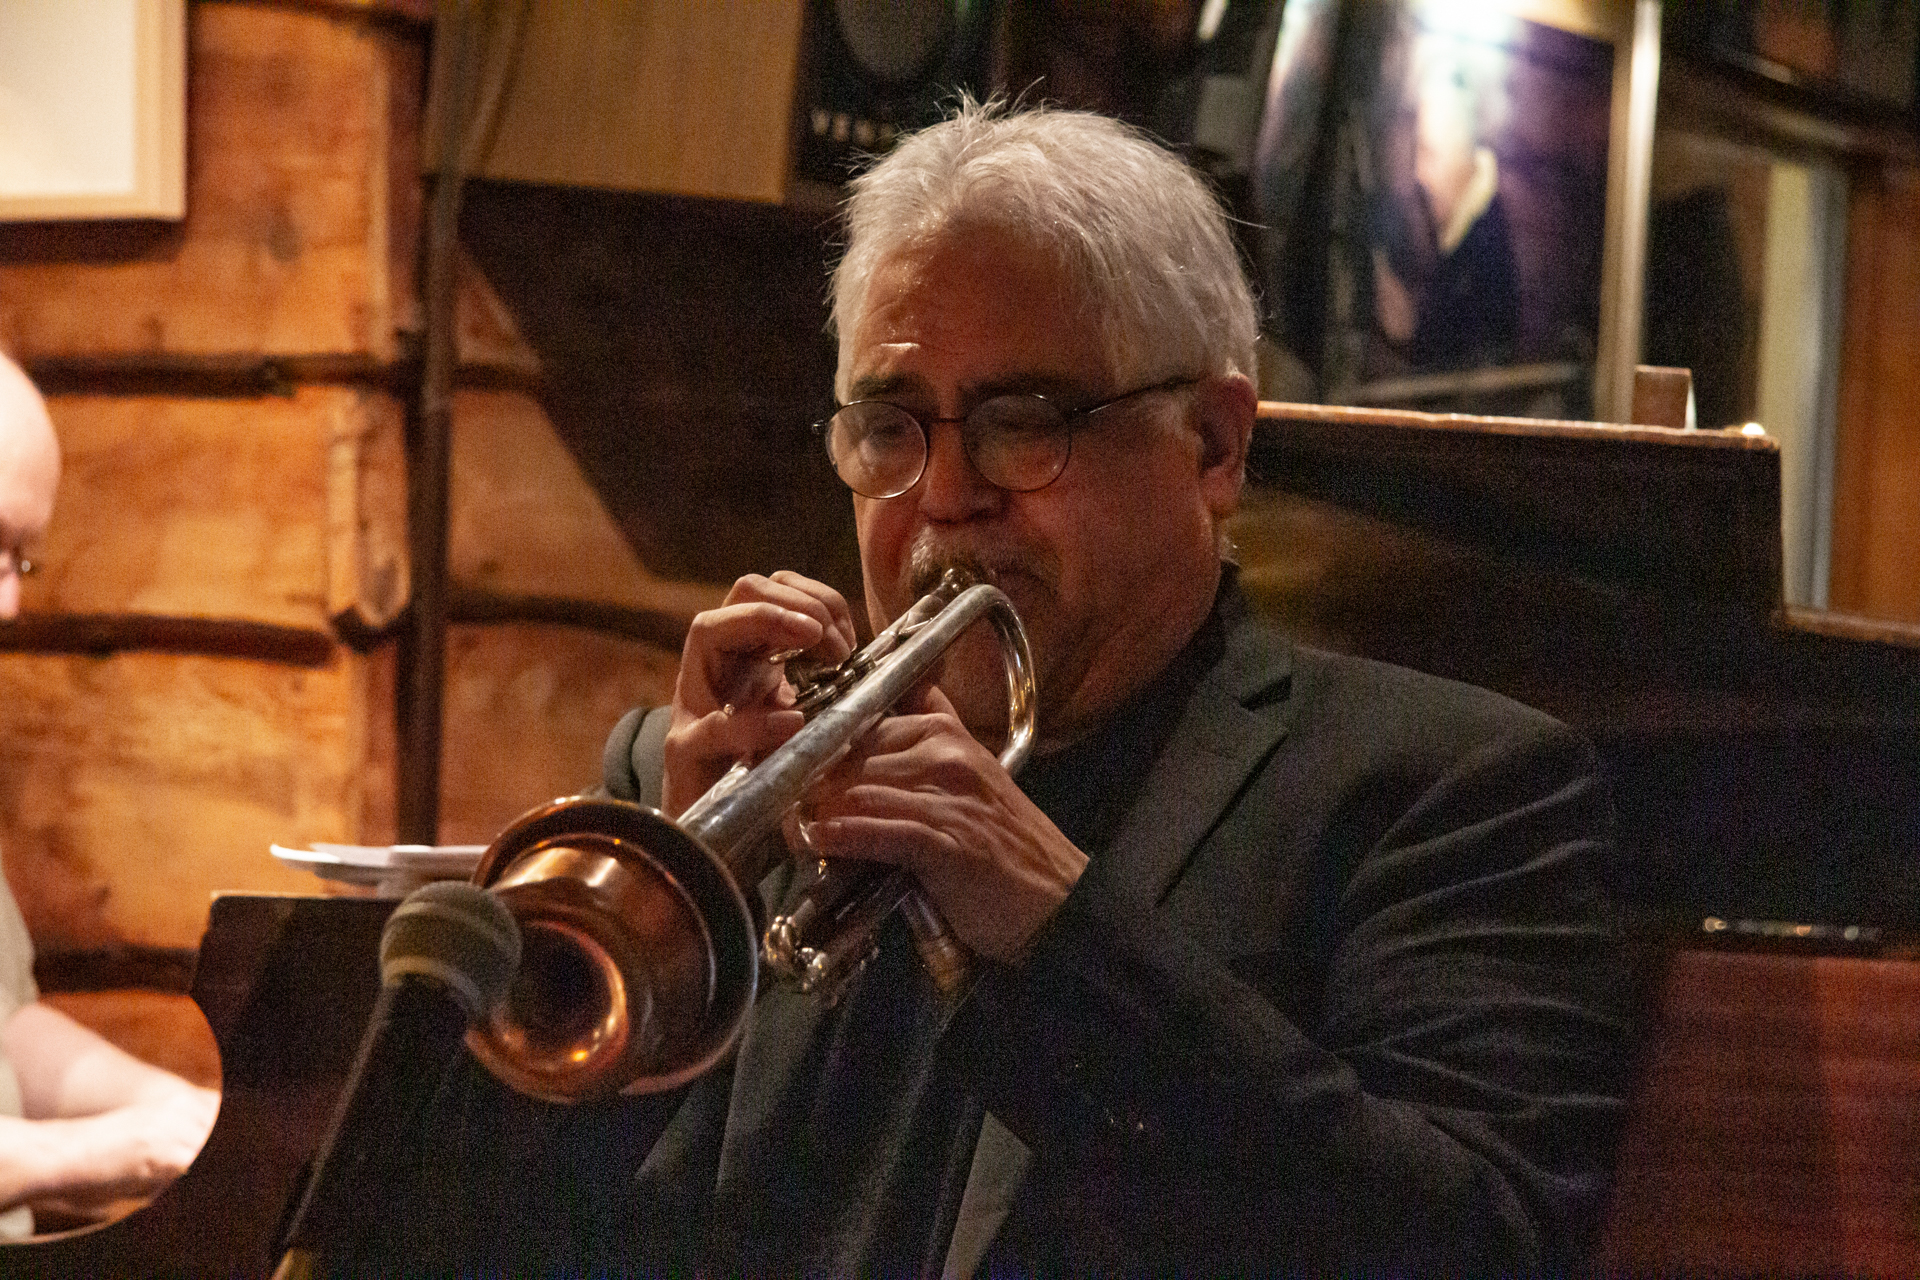 David Scott, trumpet